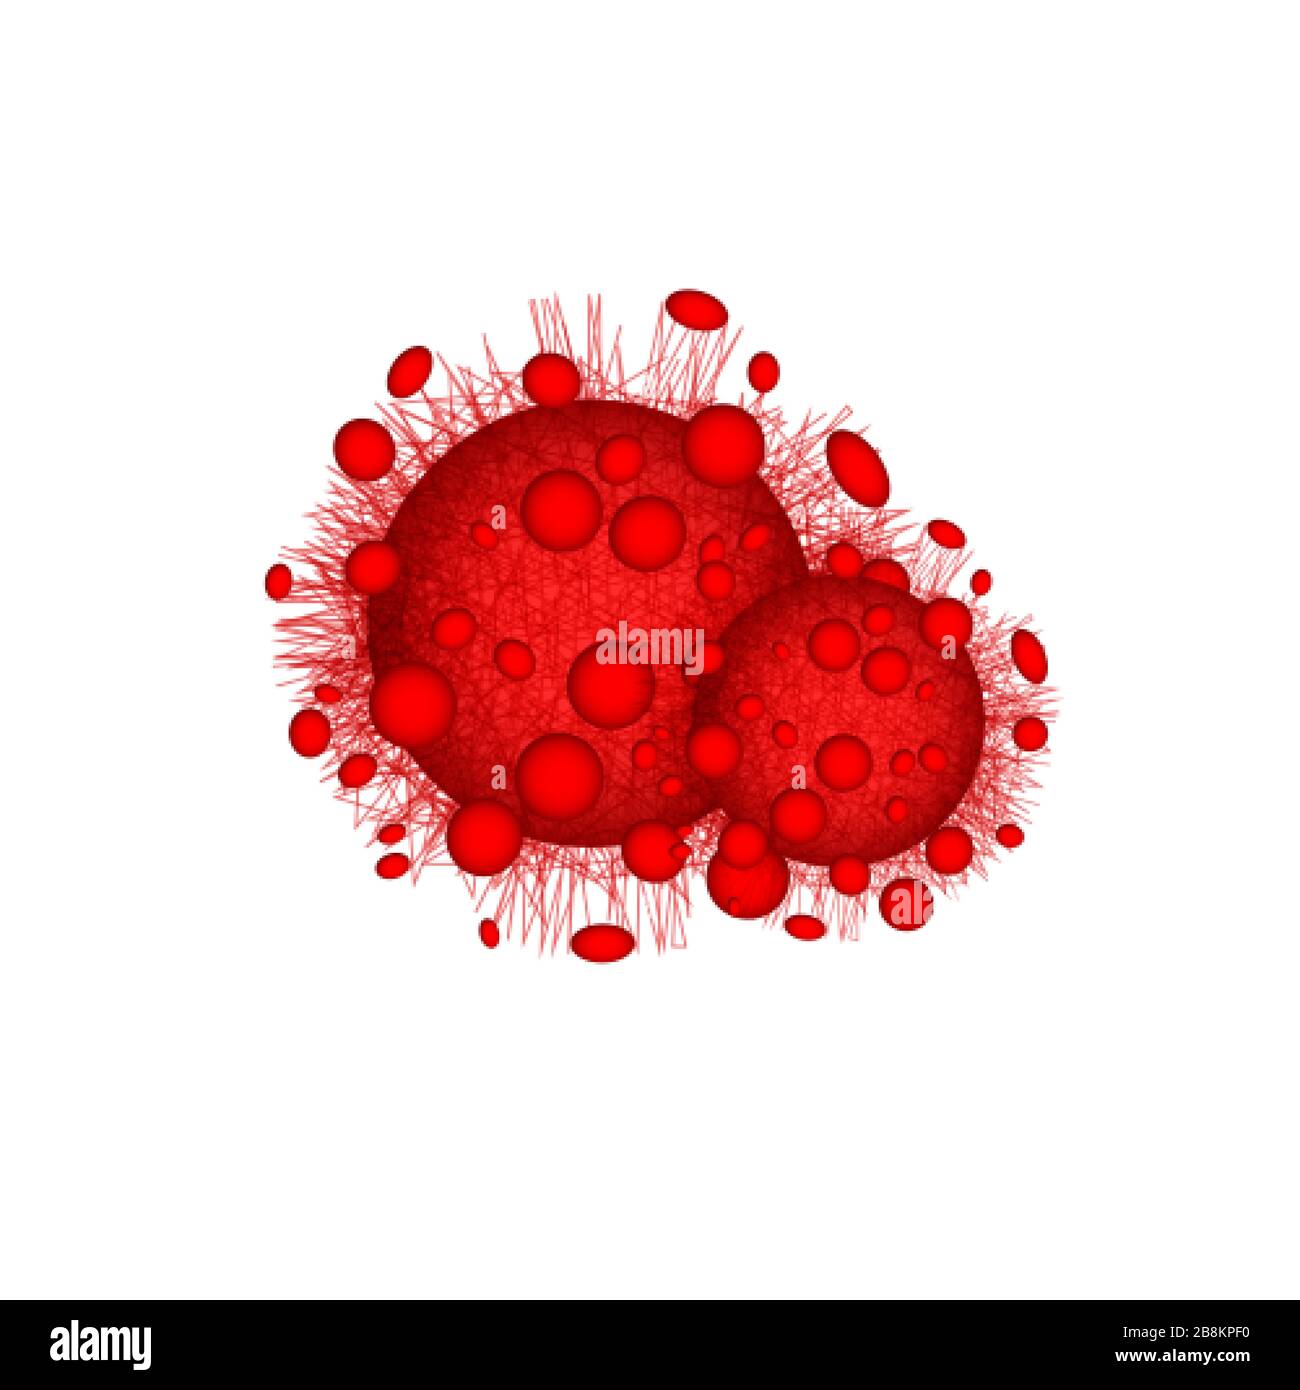 Roter Corona-Virus. Gefährliche Infektion oder Krankheit. Hintergrund der medizinischen Warnung. Vektorgrafiken isoliert auf weißem Hintergrund Stock Vektor